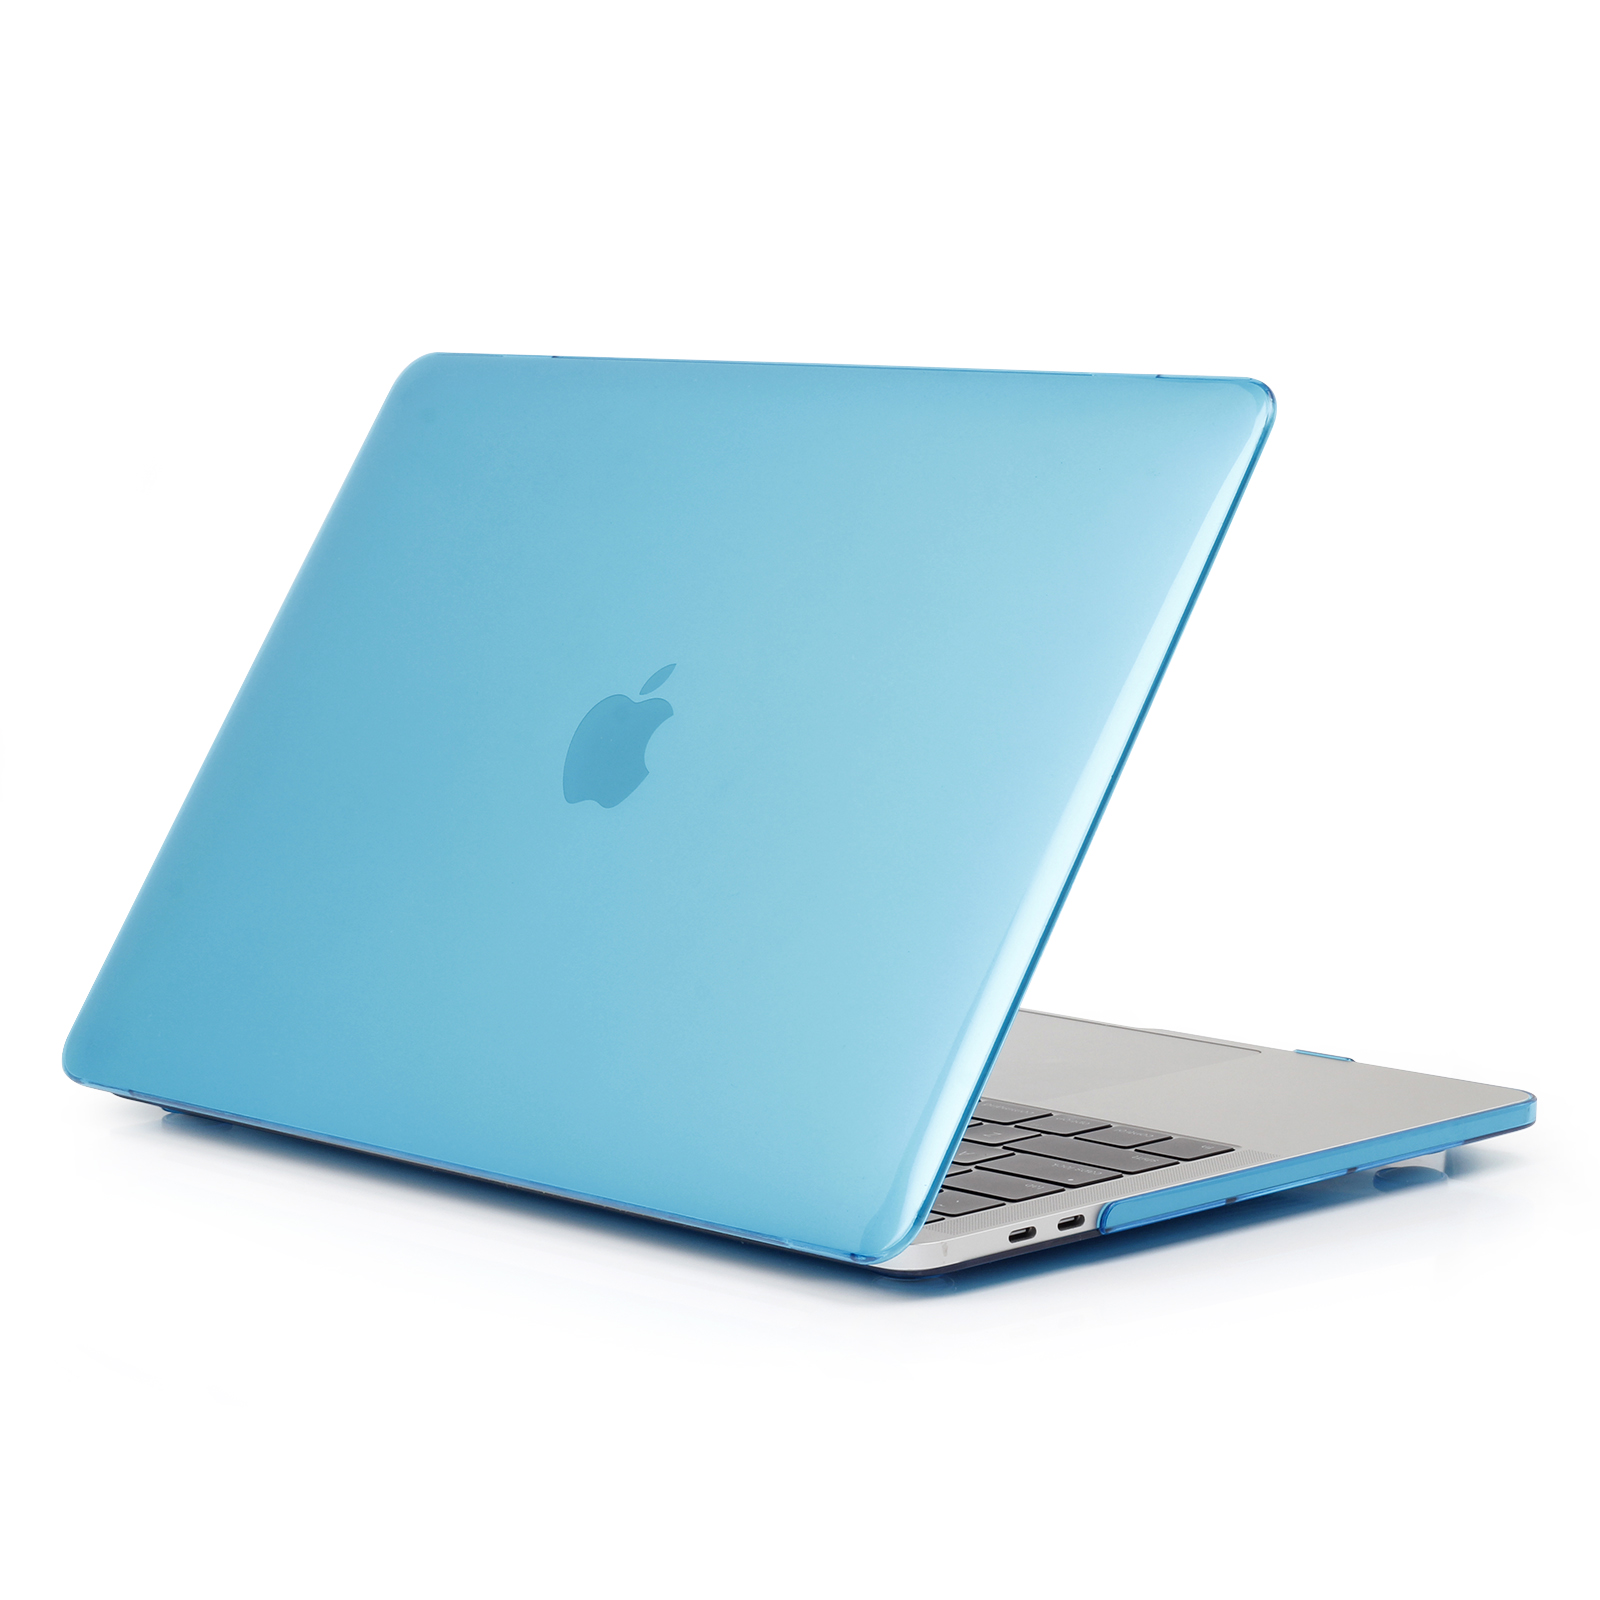 iPouzdro.cz pro MacBook Pro 15 (2012-2015) 2222221002054 modrá